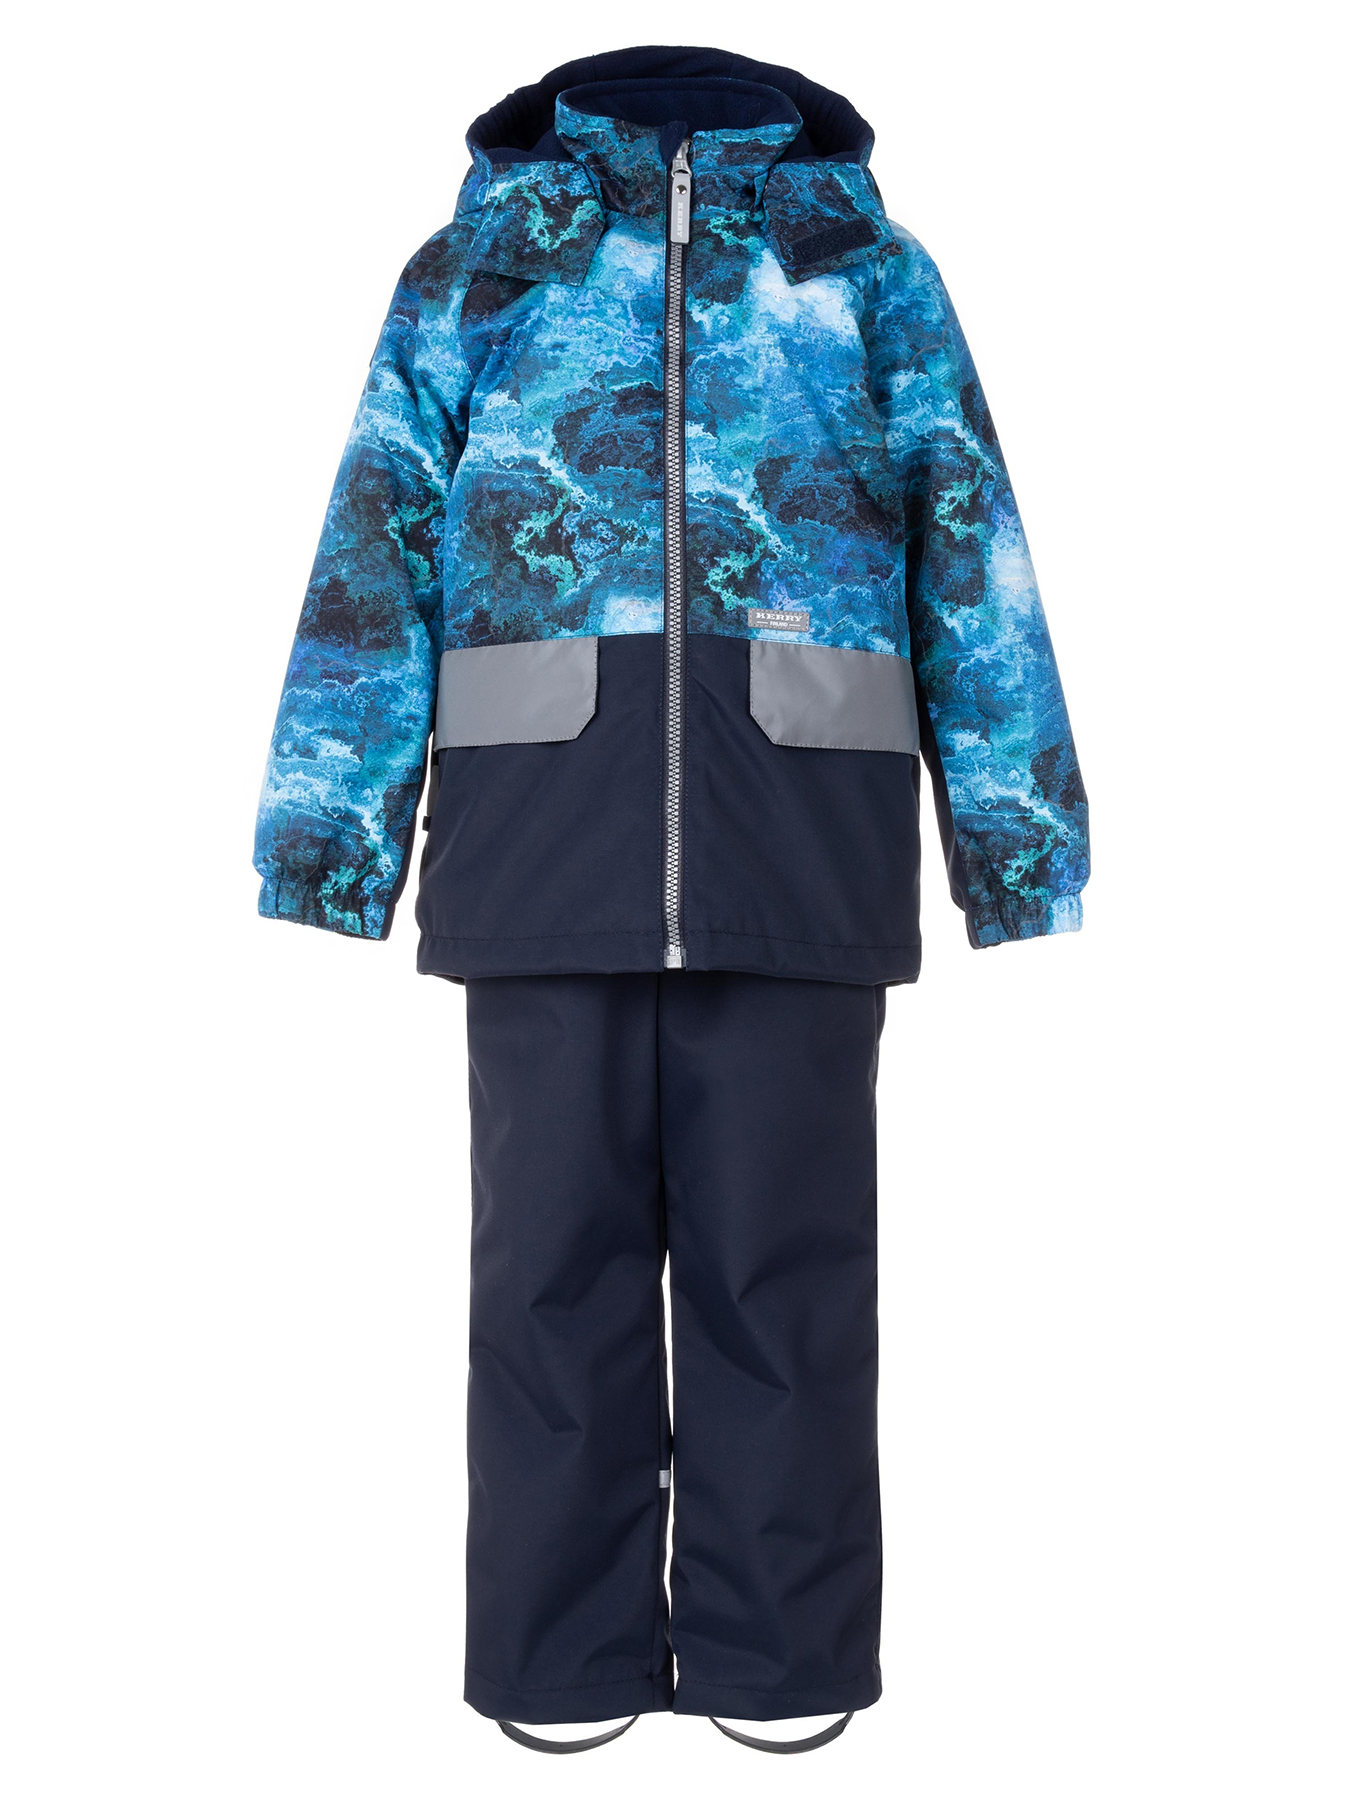 Комплект верхней одежды KERRY TOMI K24030, 6310-синий с рисунком,темно-синий, 134